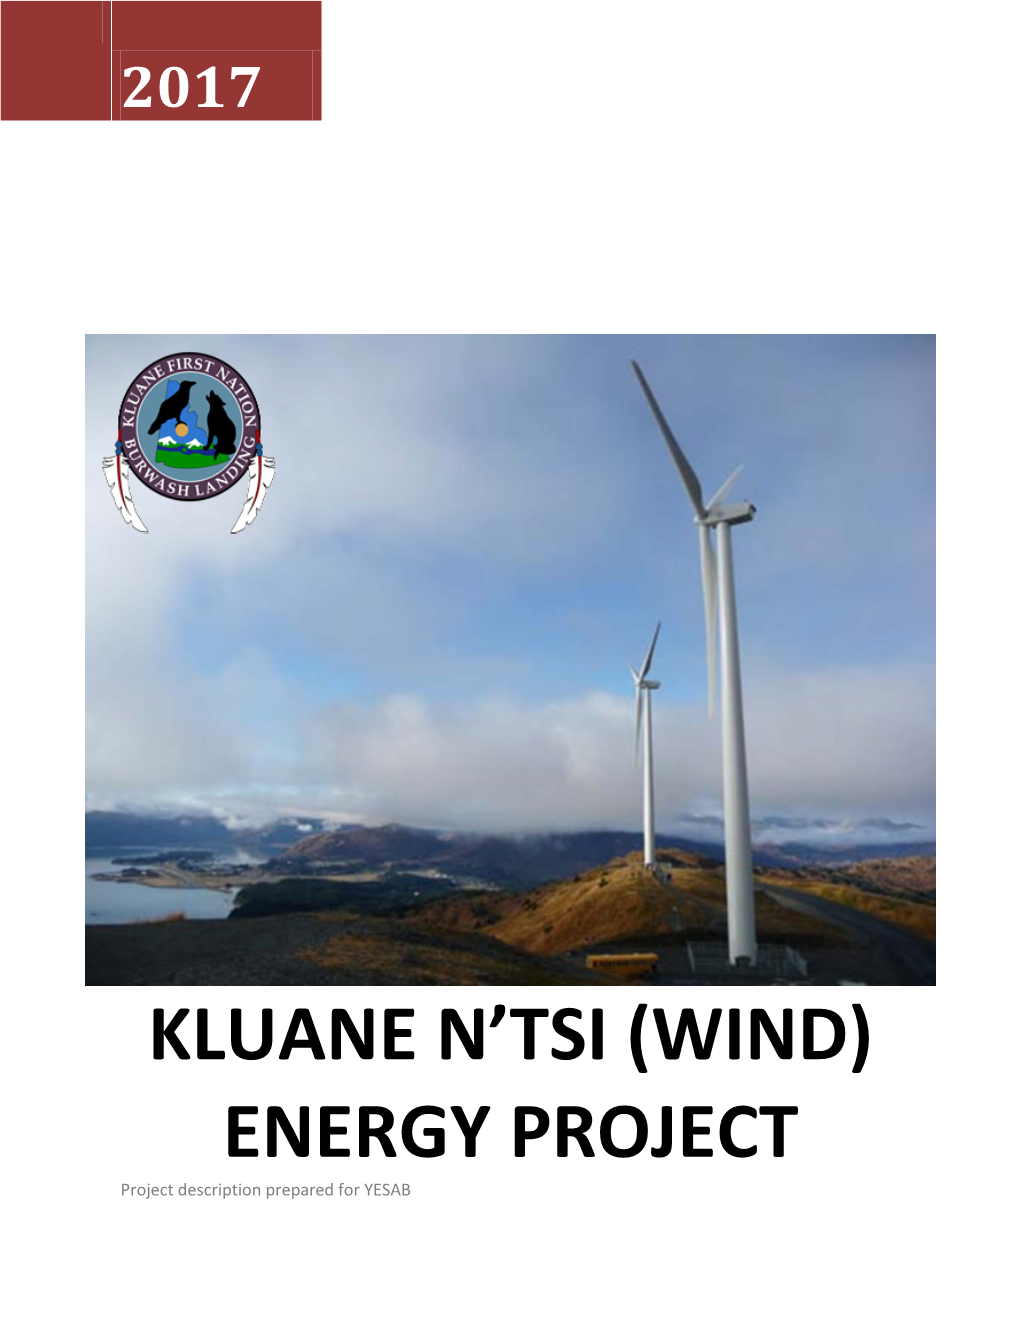 Kluane N'tsi (Wind) Energy Project